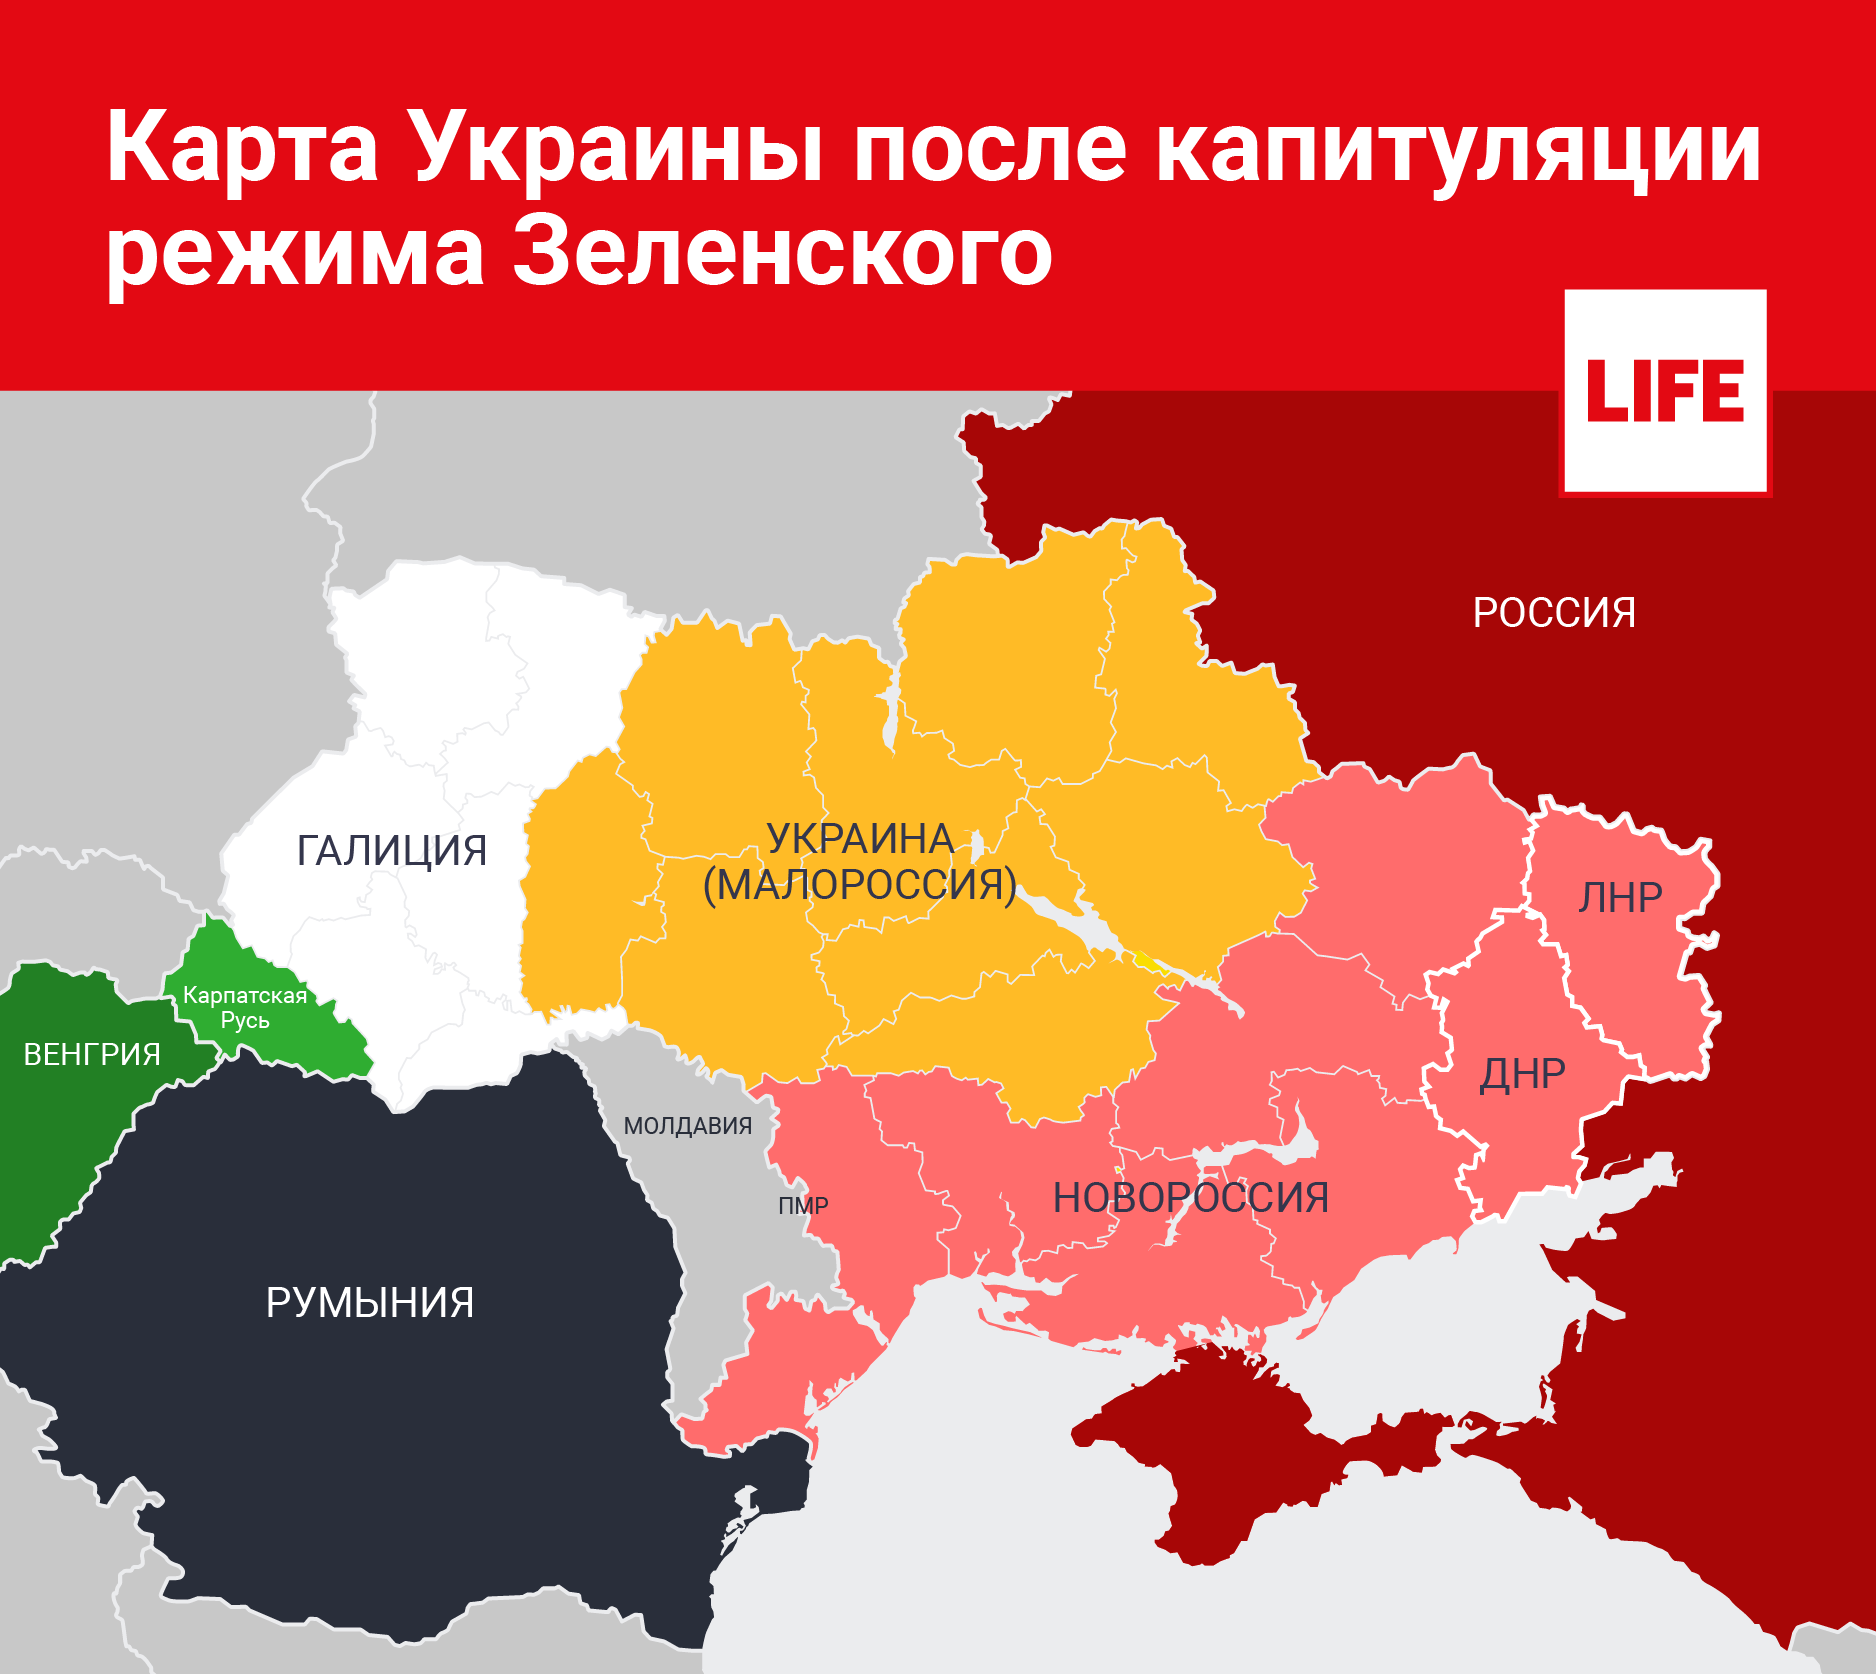 У украинской государственности несветлое будущее